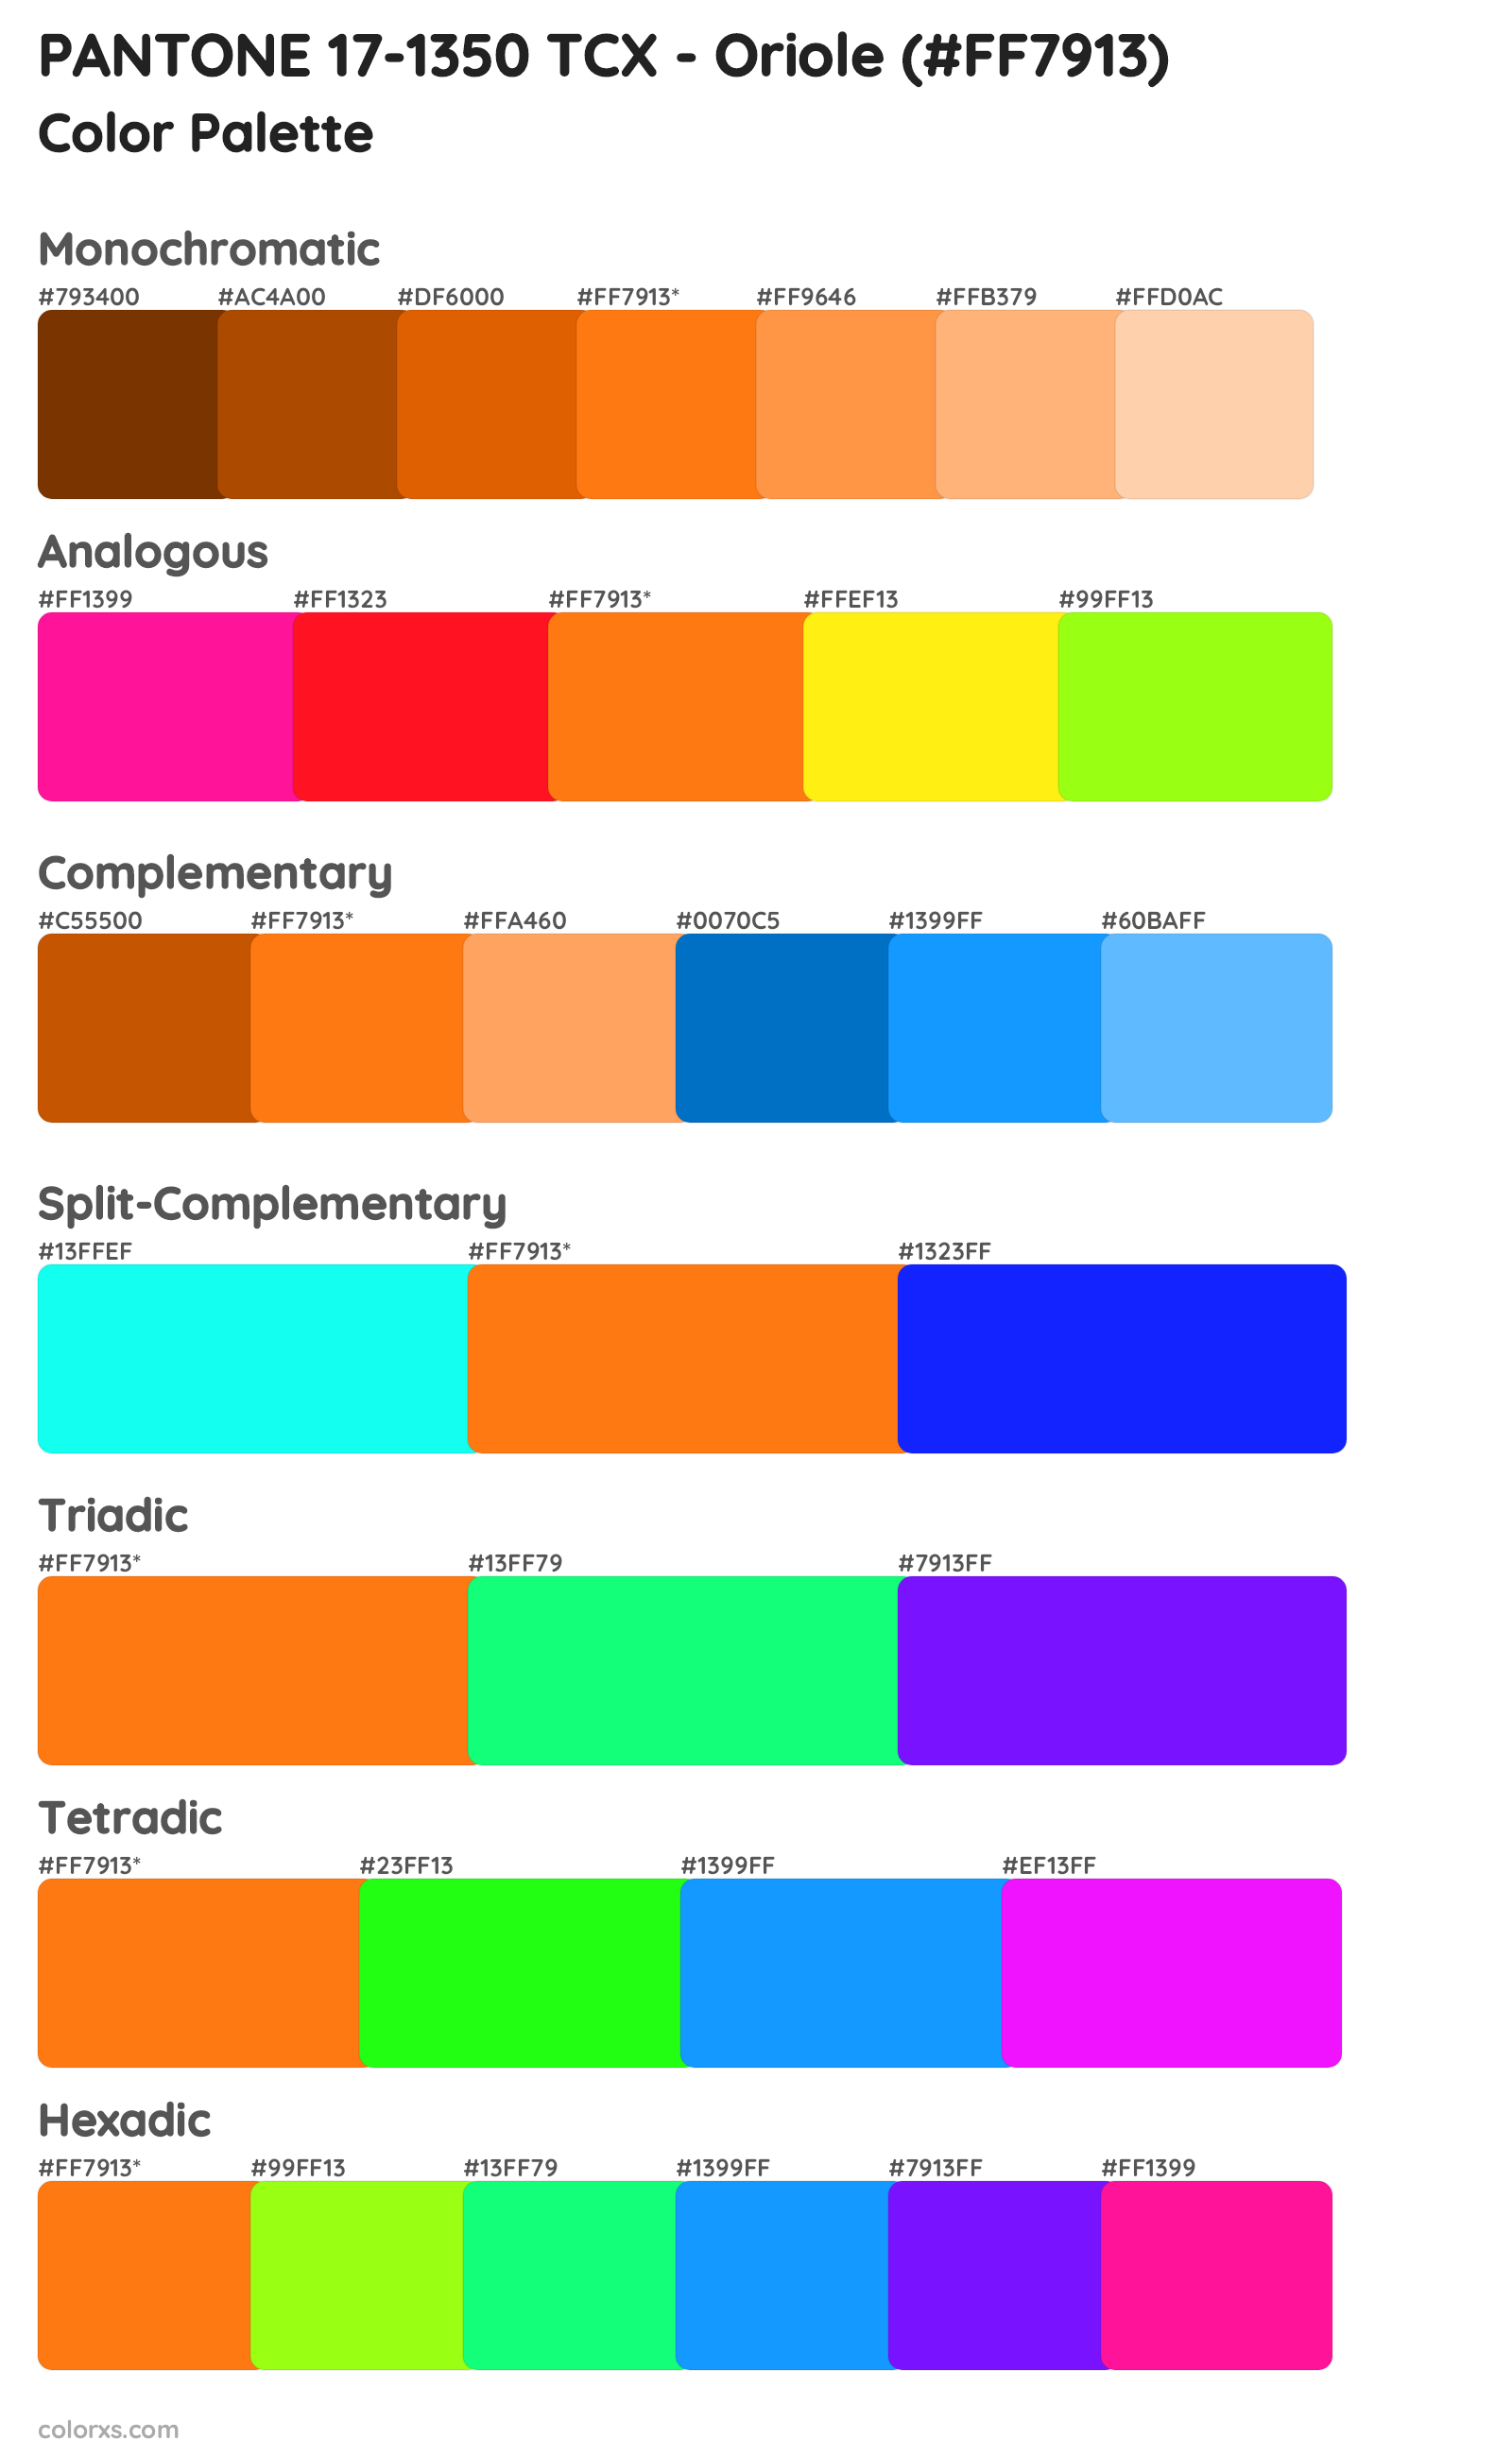 PANTONE 17-1350 TCX - Oriole Color Scheme Palettes